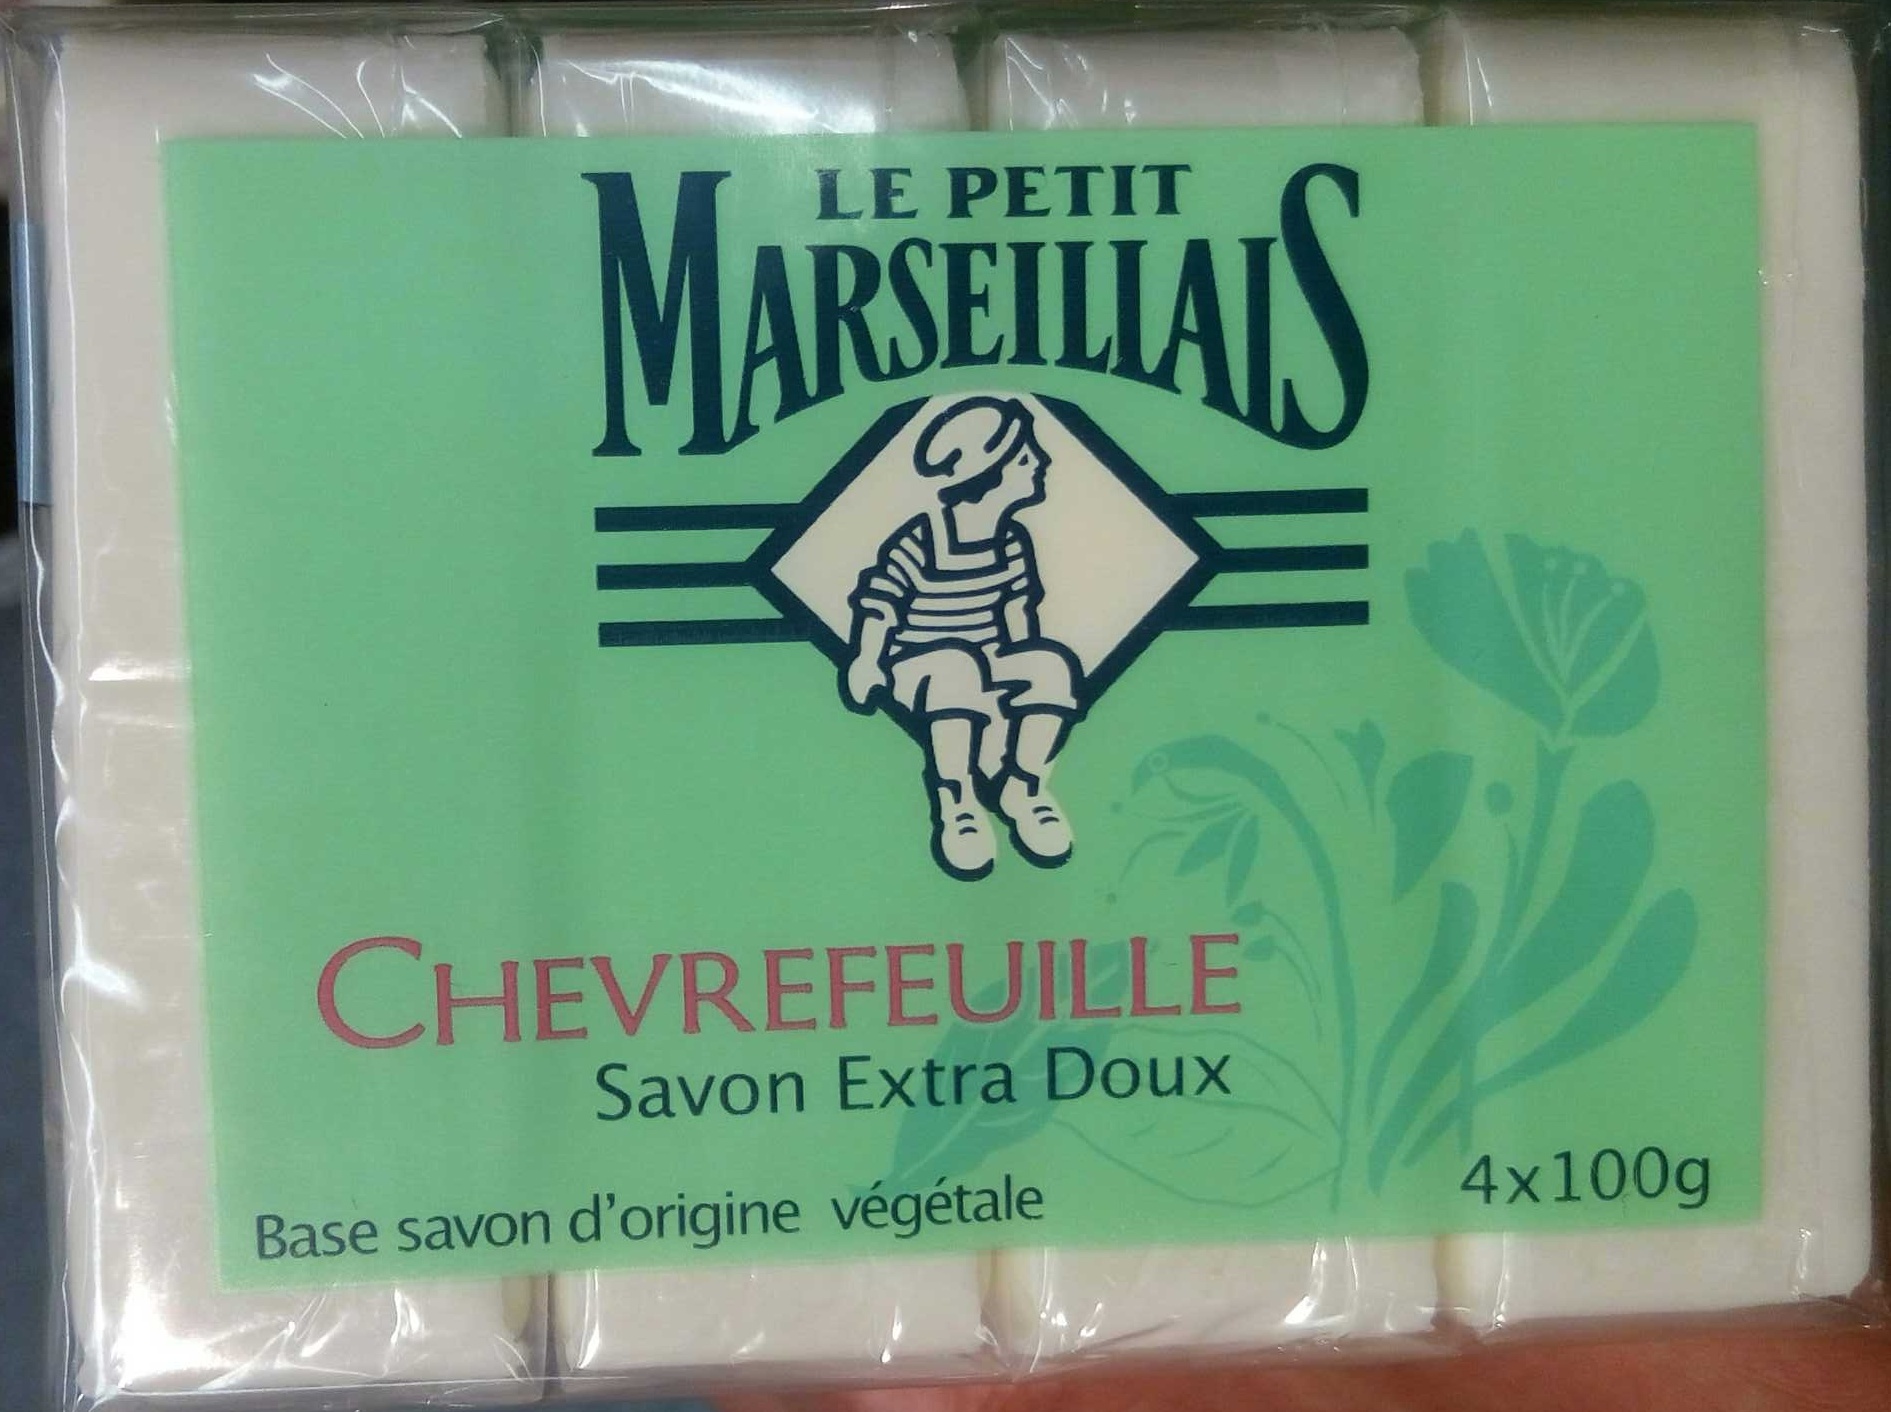 savon extra doux Chevrefeuille - Product - en